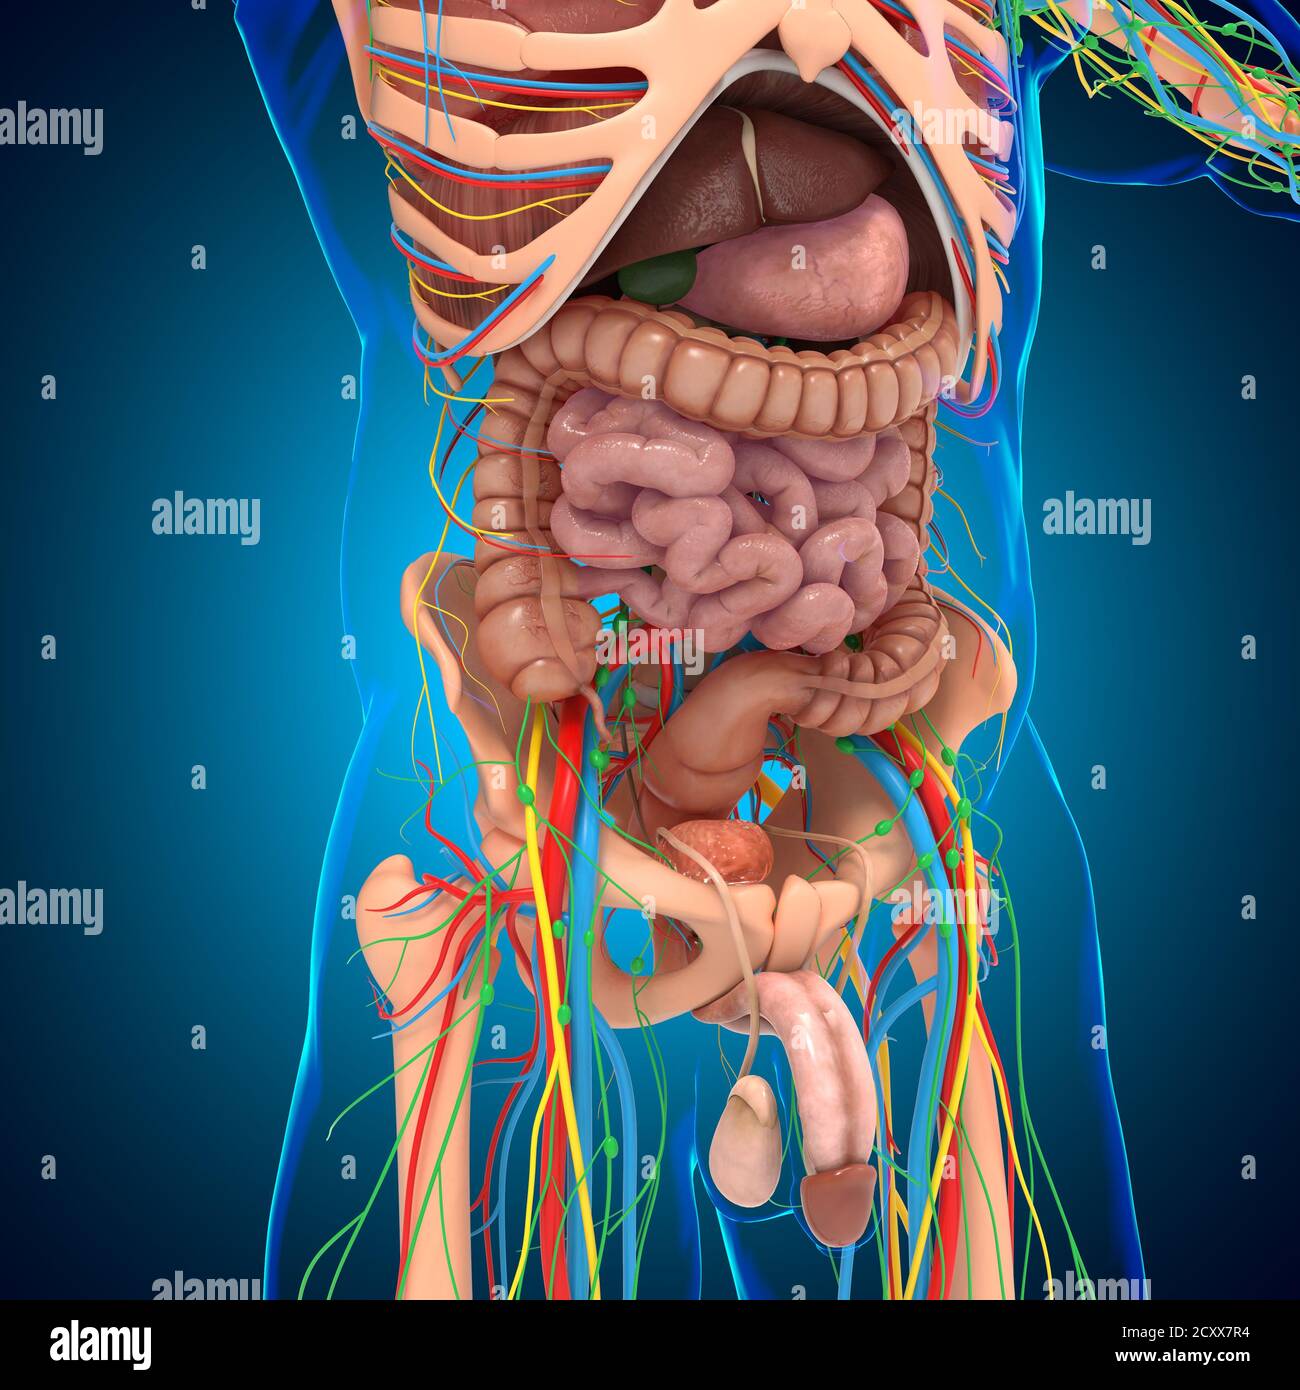 Anatomie humaine pour le concept médical Illustration 3D Banque D'Images